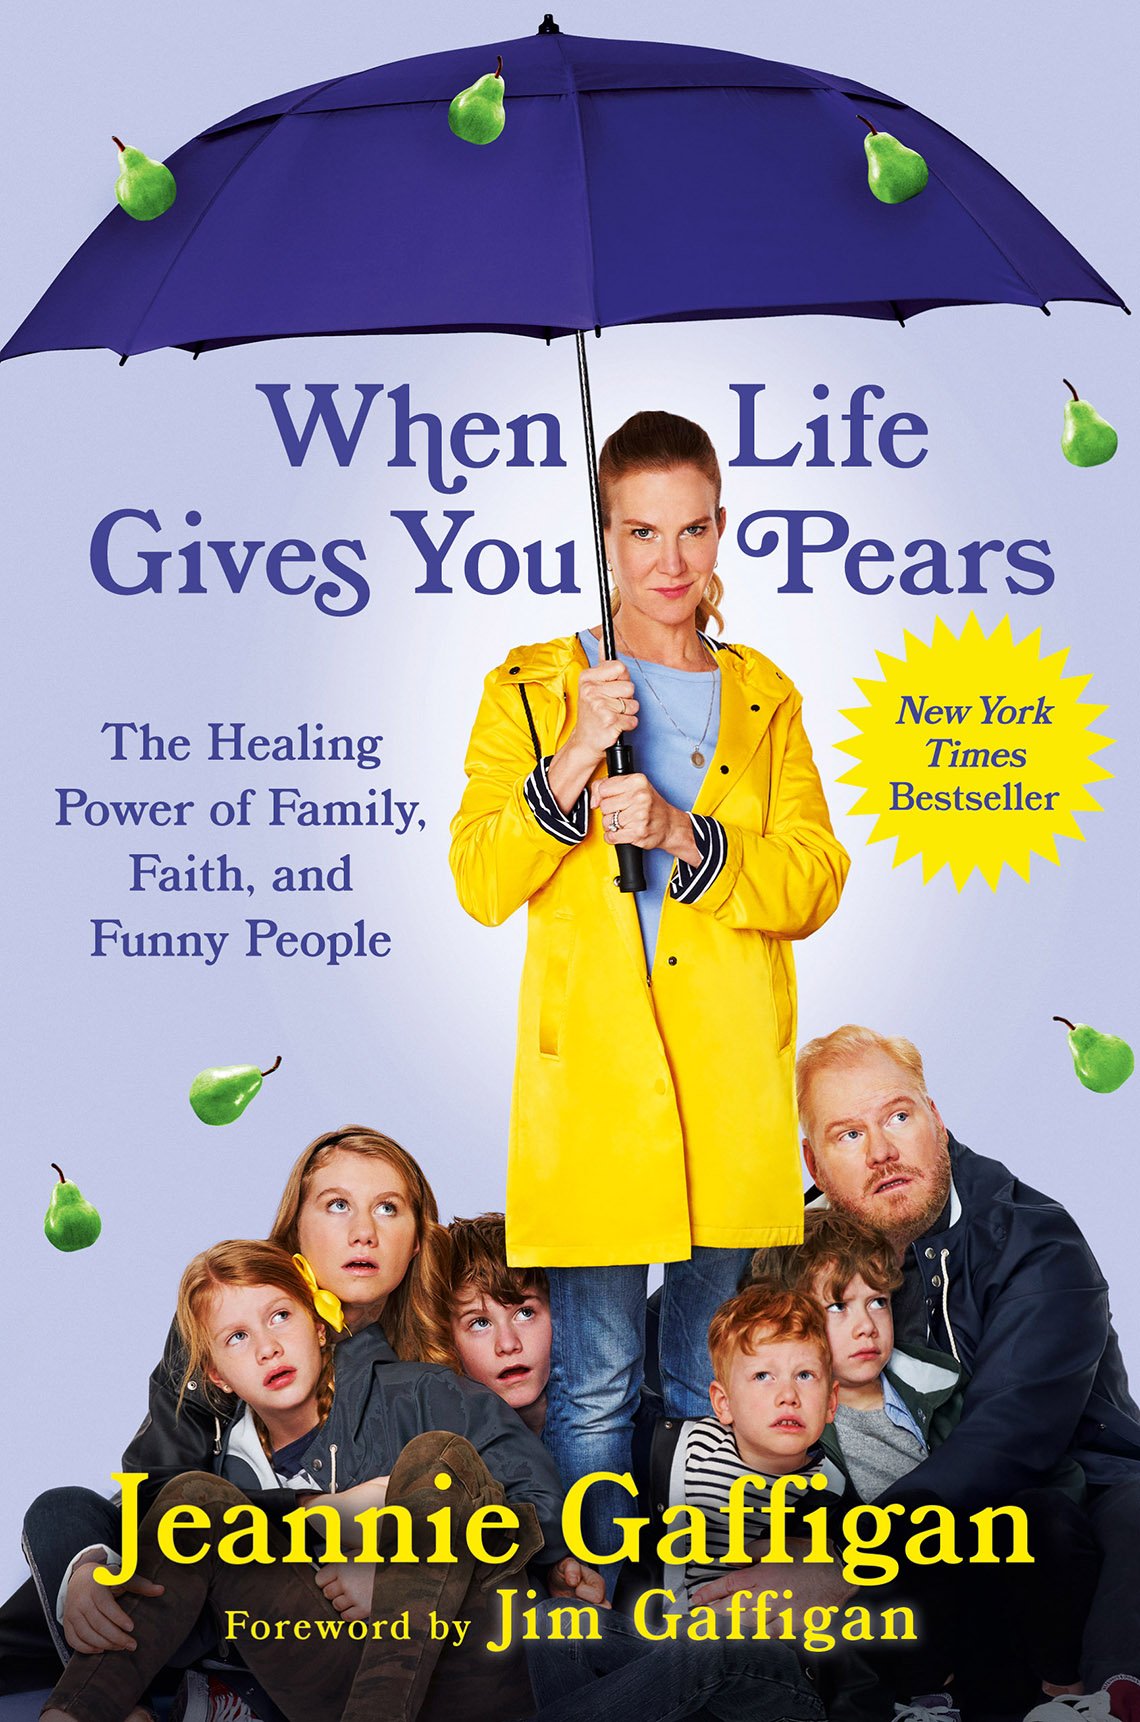 Portada del libro When Life Gives You Pears. Jeannie Gaffigan y su familia de pie bajo un paraguas morado mientras llueve peras